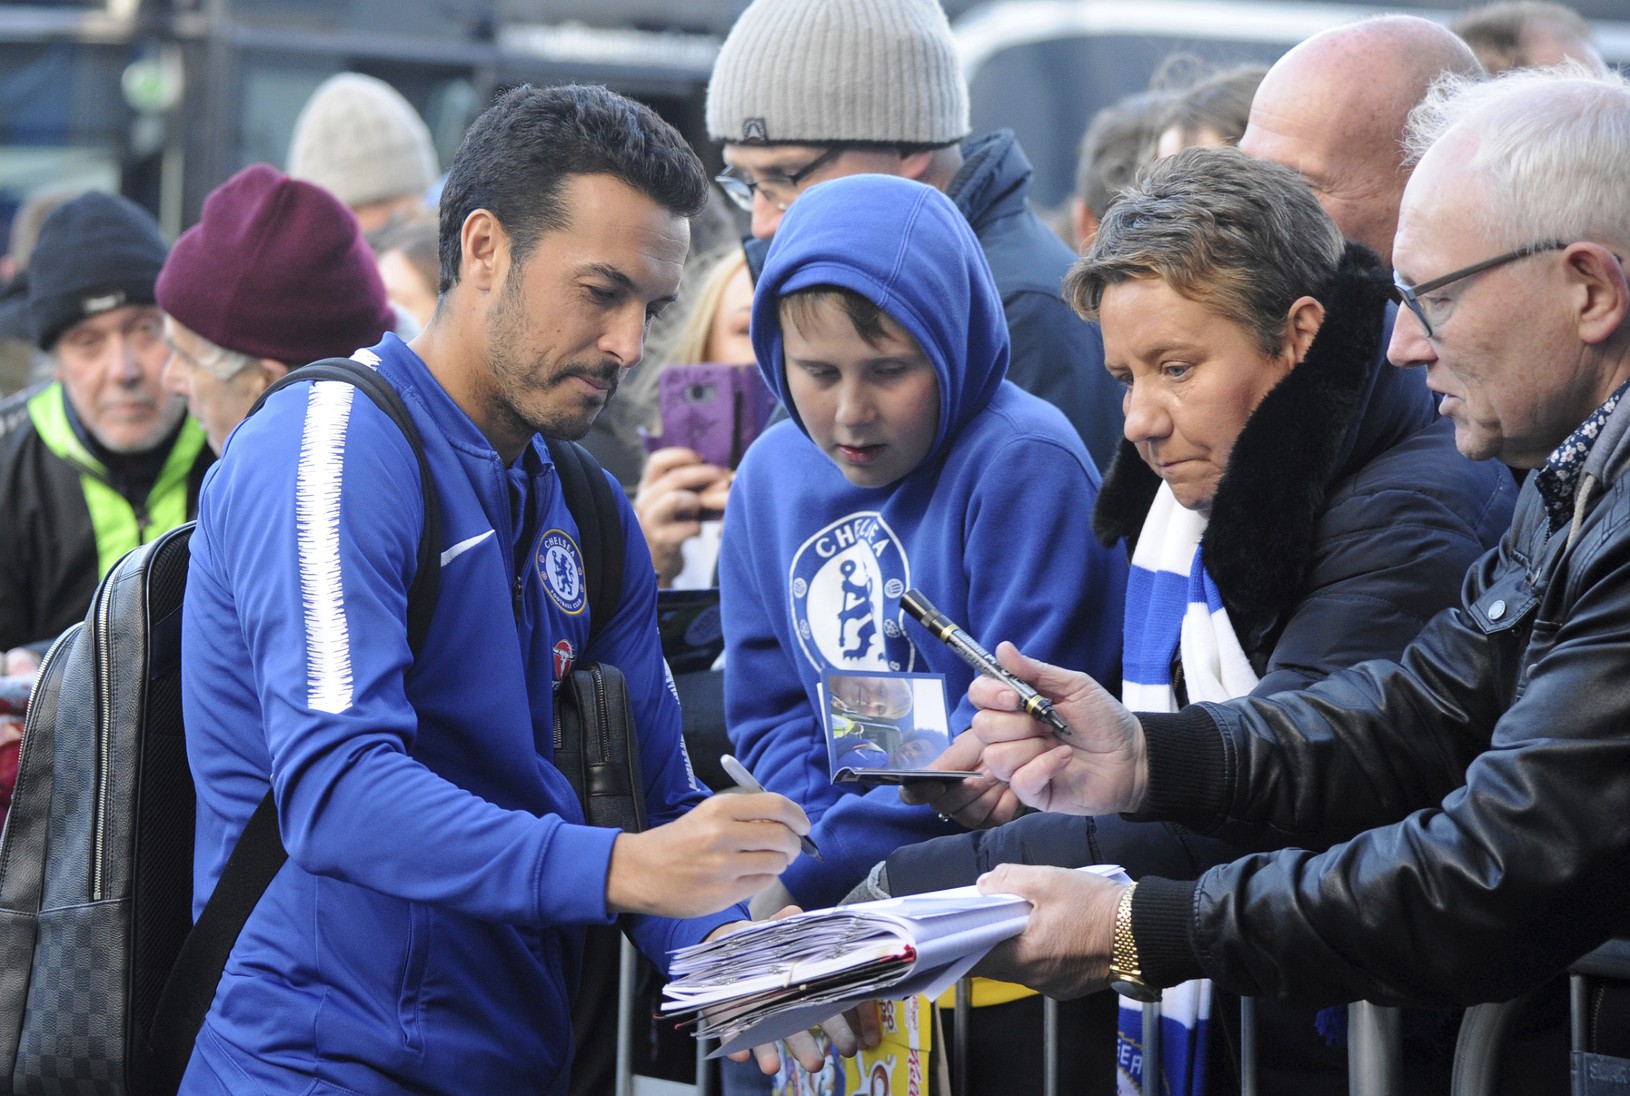 Pedro sa podpisuje fanúšikom